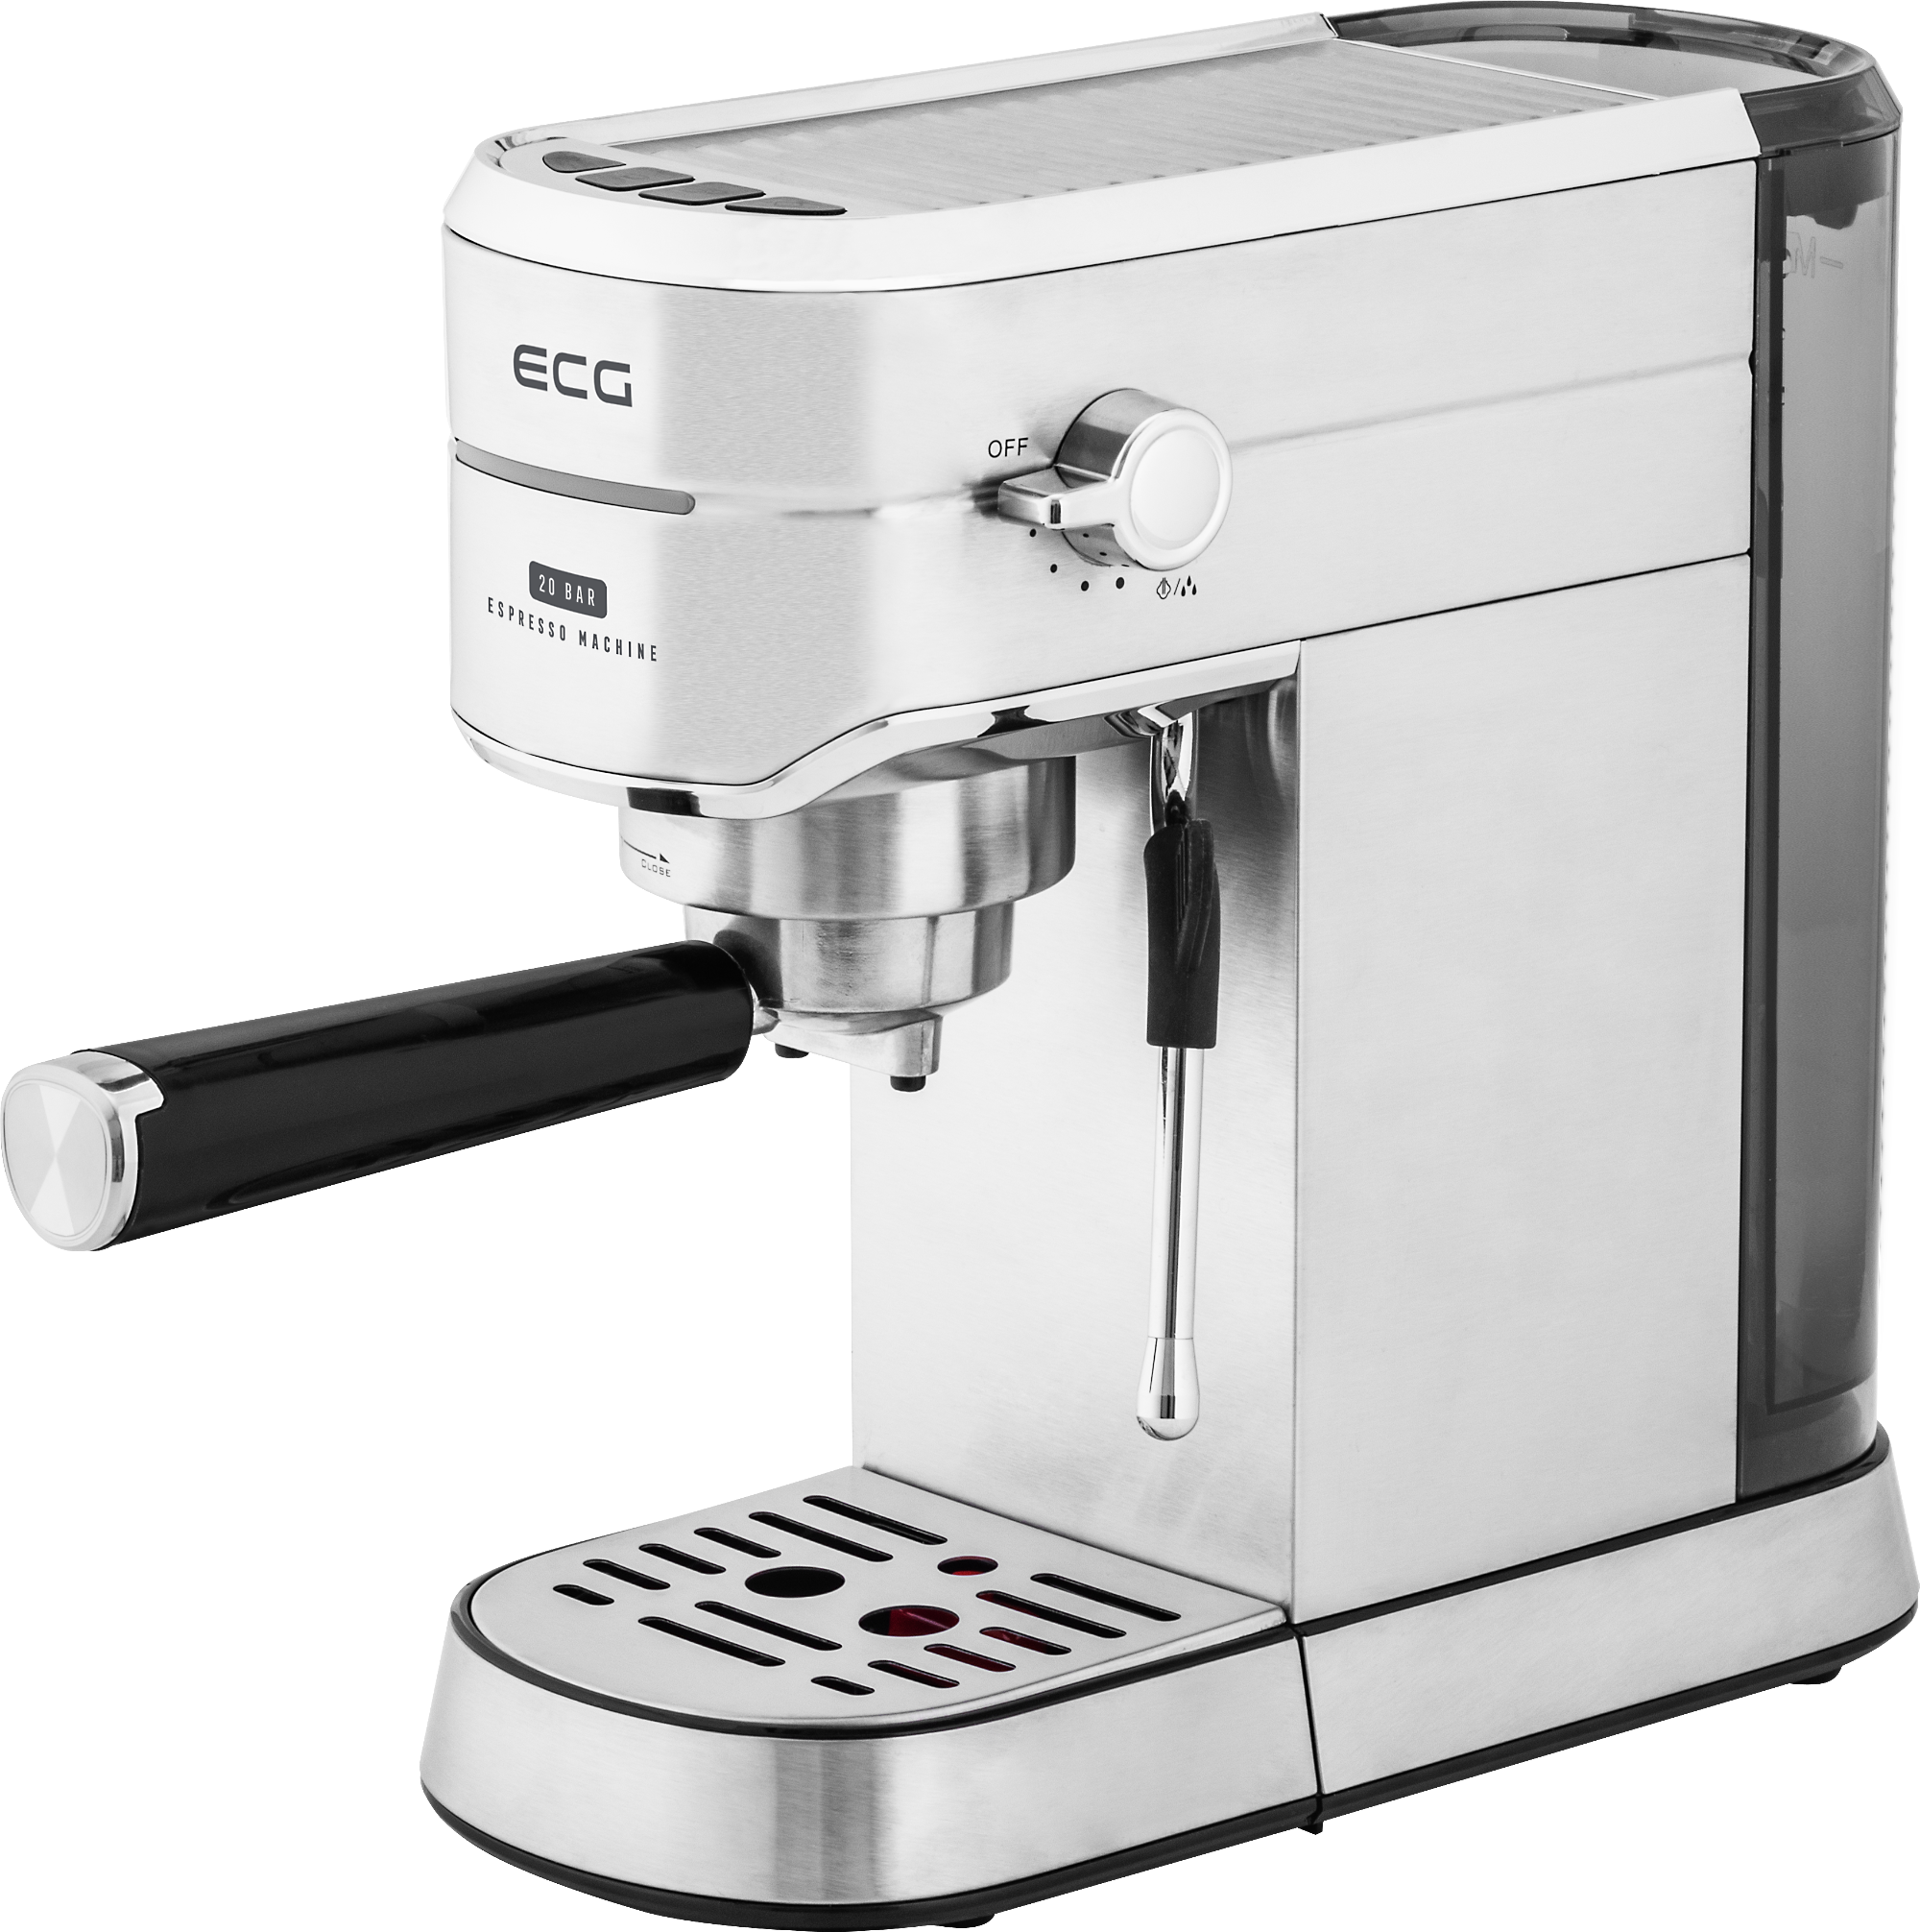 Delonghi BAR -140F L' Espresso Easy Coffee Machine Working